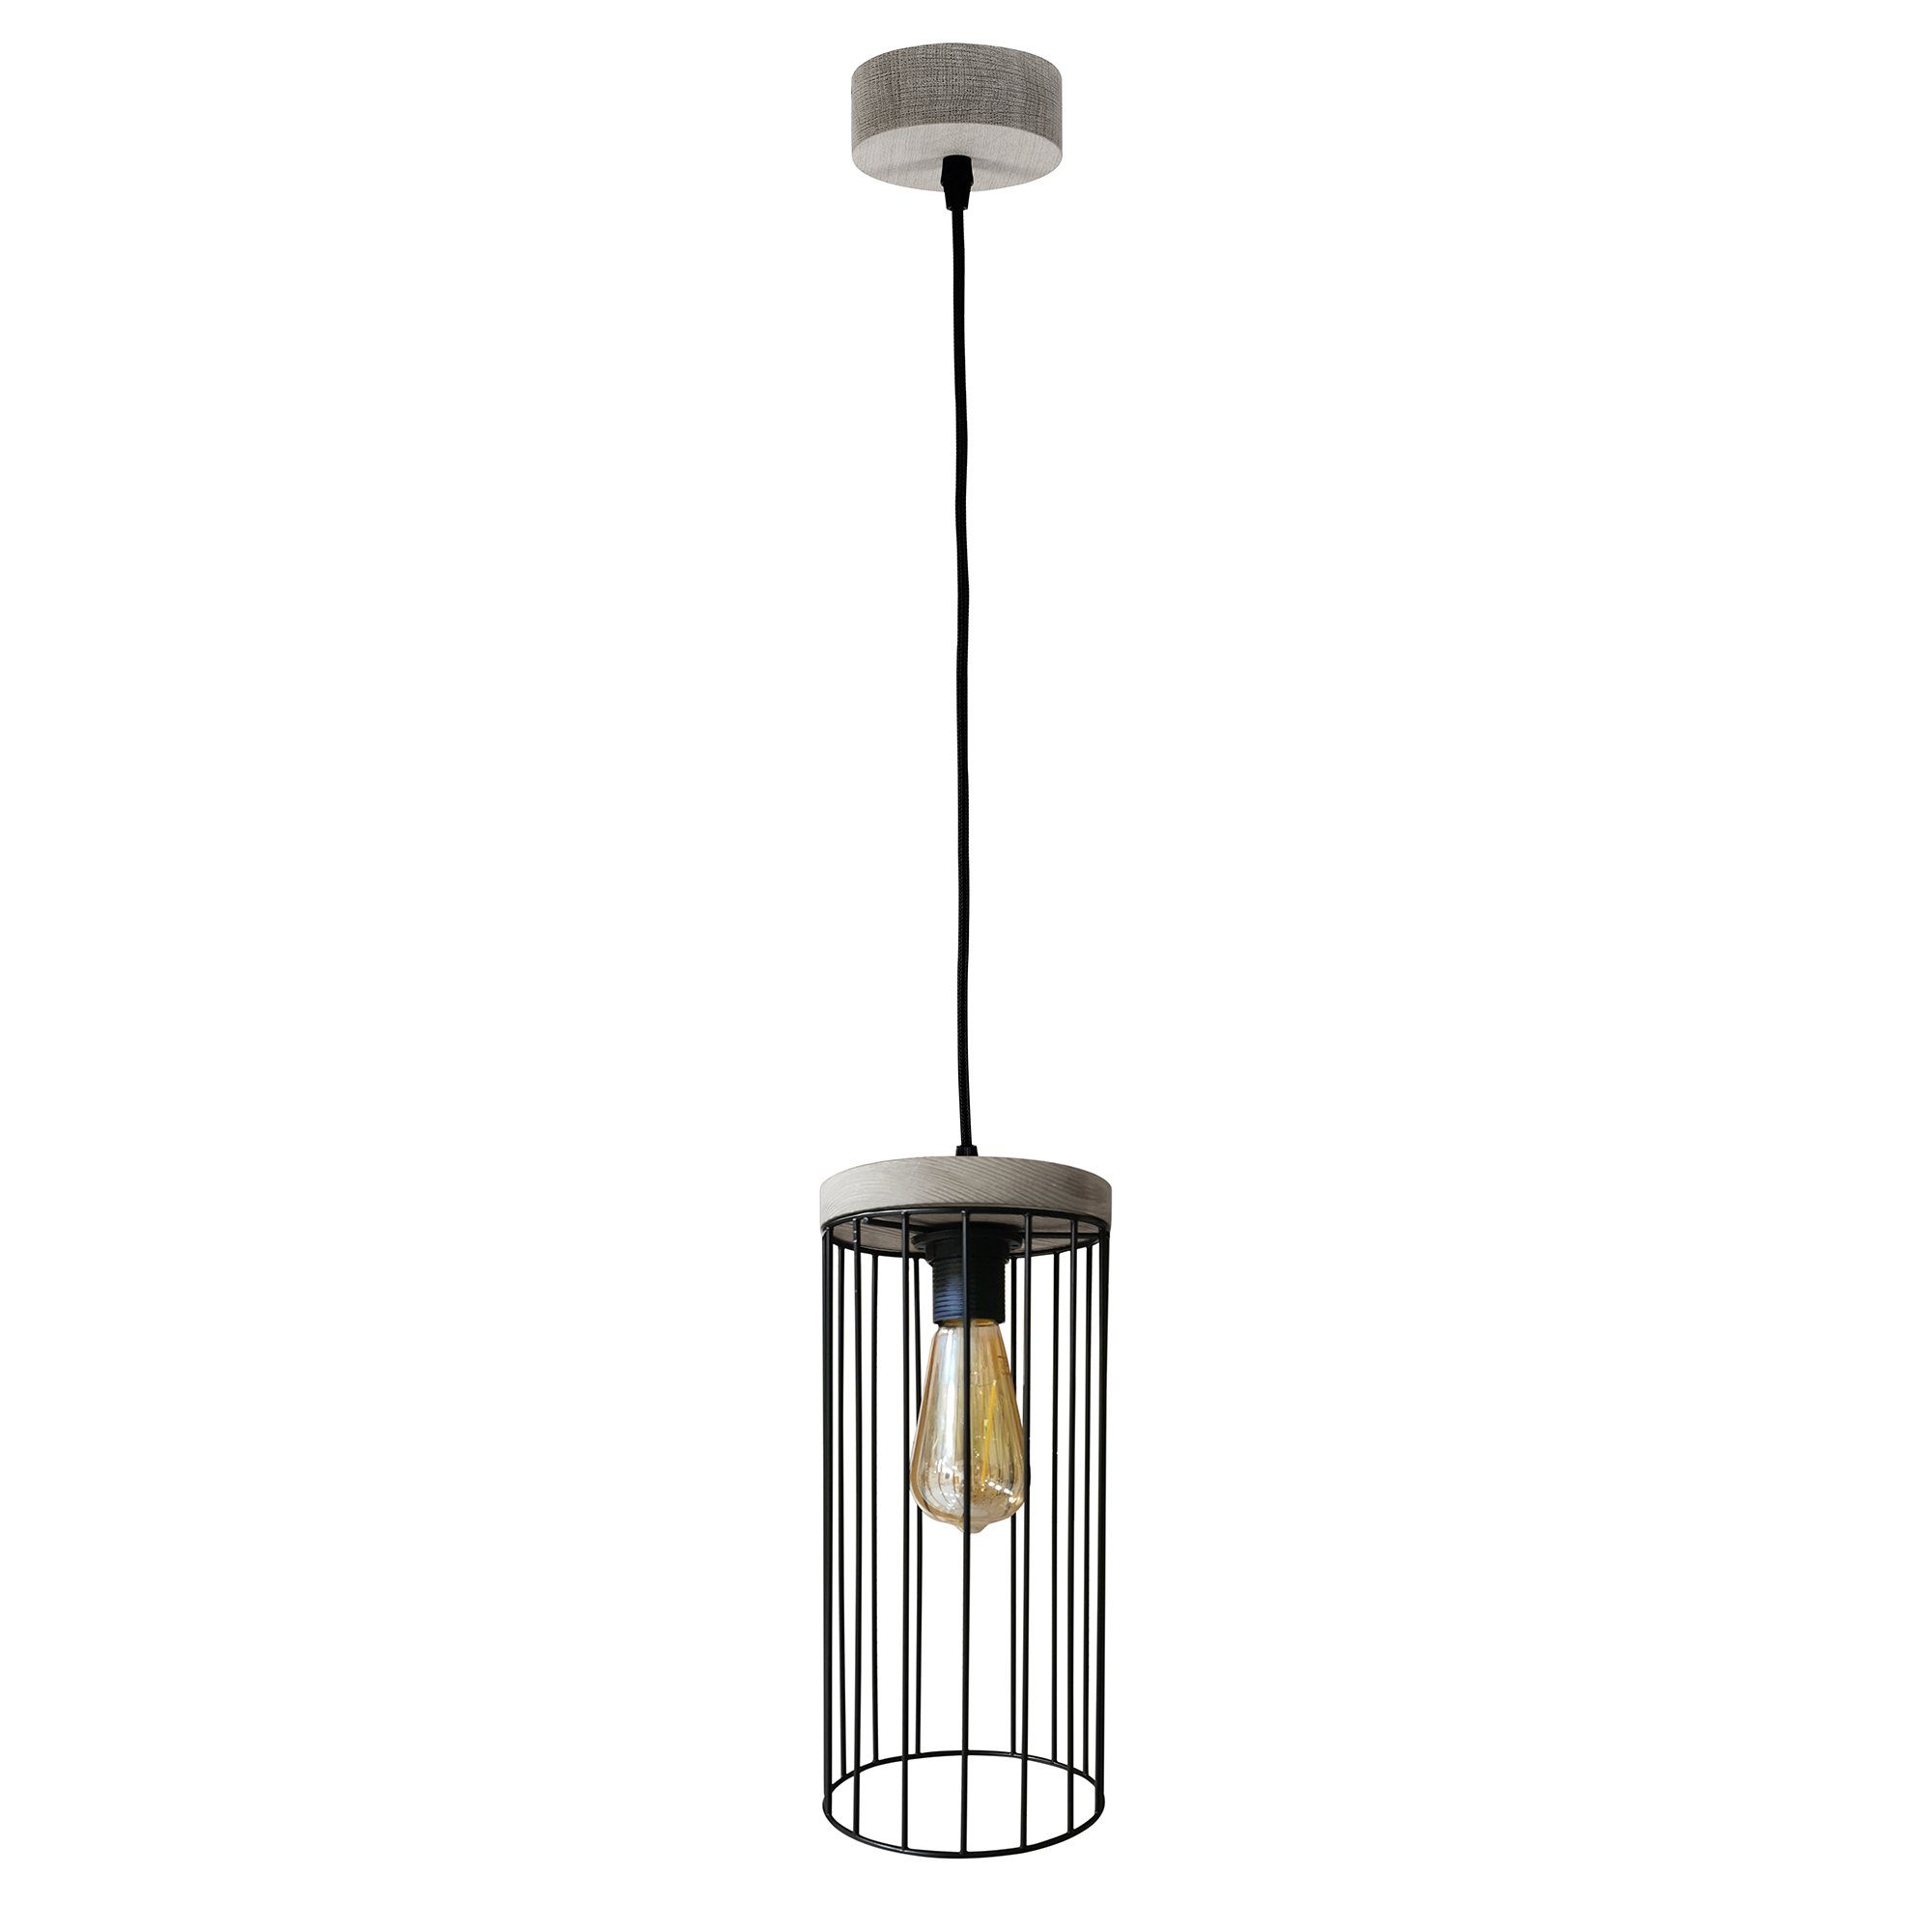 britop lighting hanglamp timeo wood max hanglamp, trendy kap van metaal, met grenenhout in grijs zwart